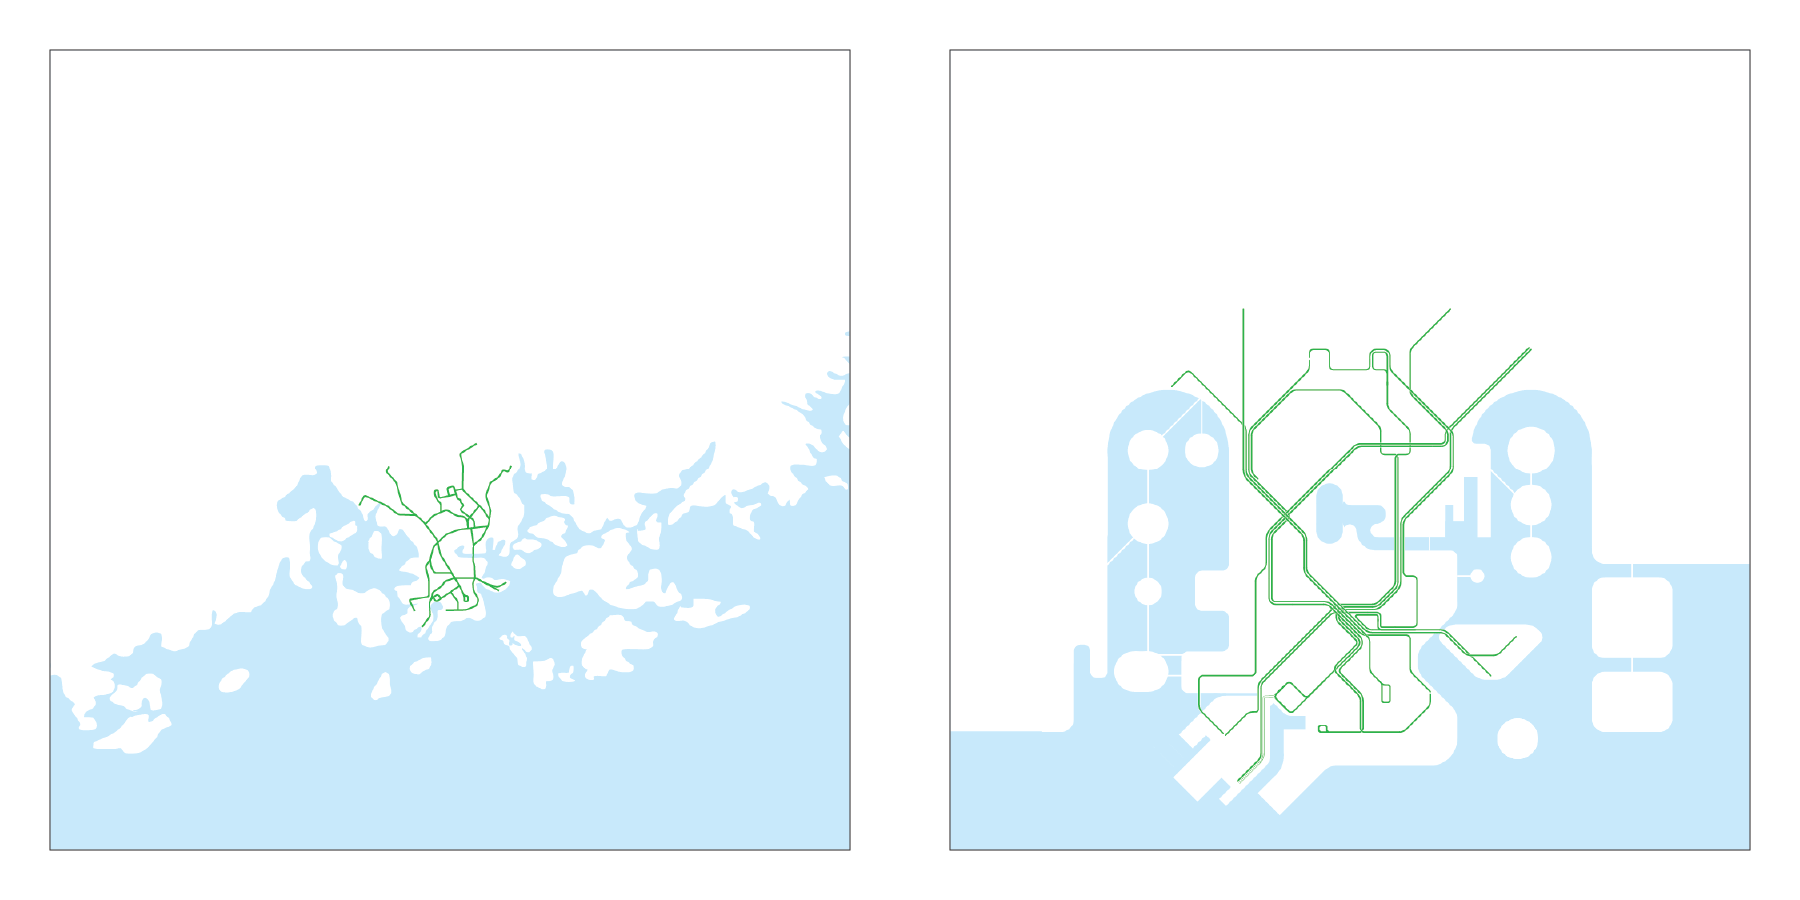 Helsinki Metro Map